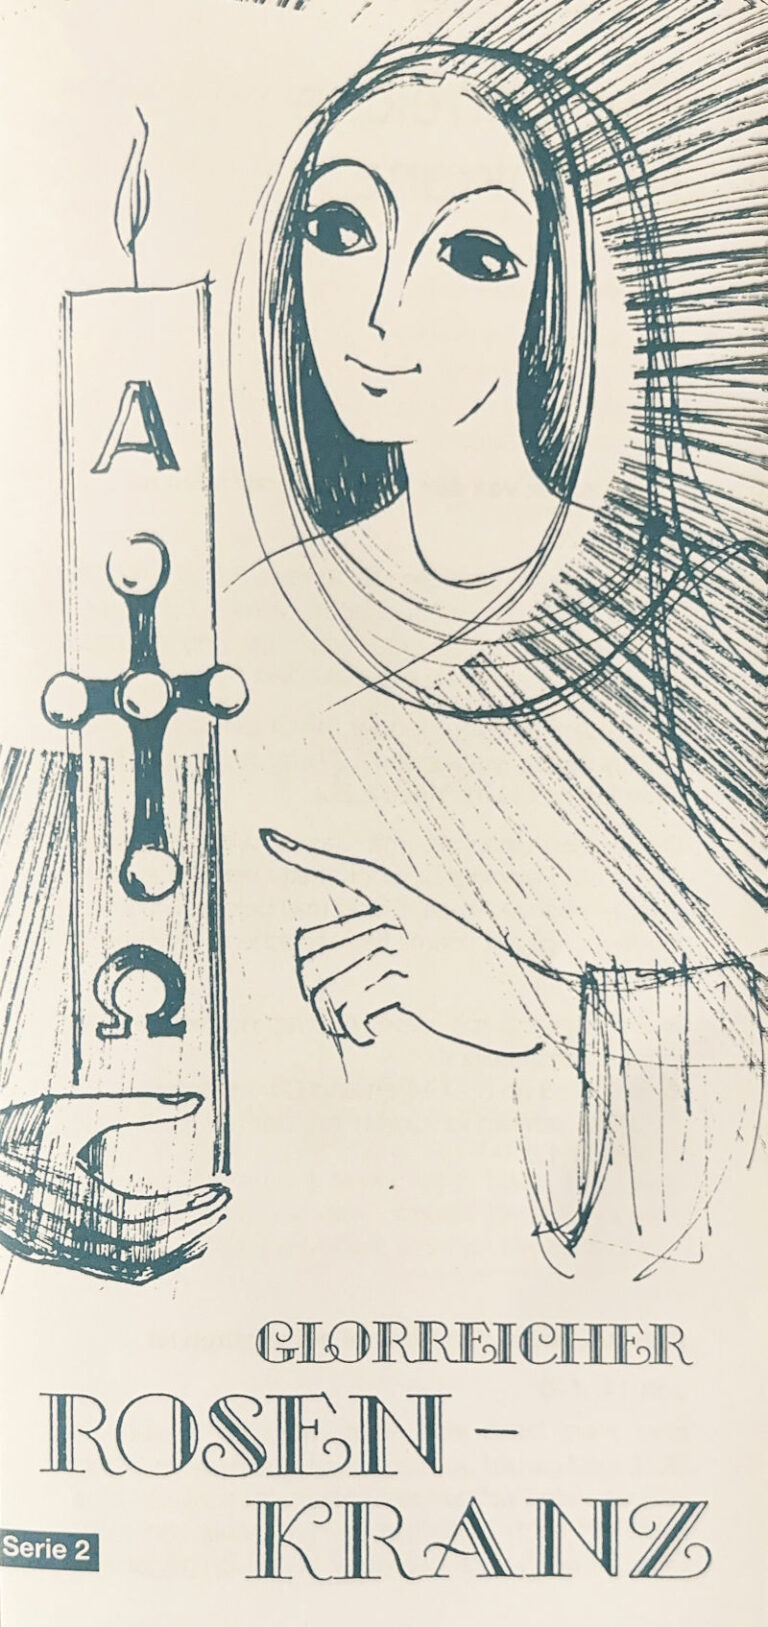 Maria gezeichnet mit Osterkerze als Symbol für die Auferstehung Jesu